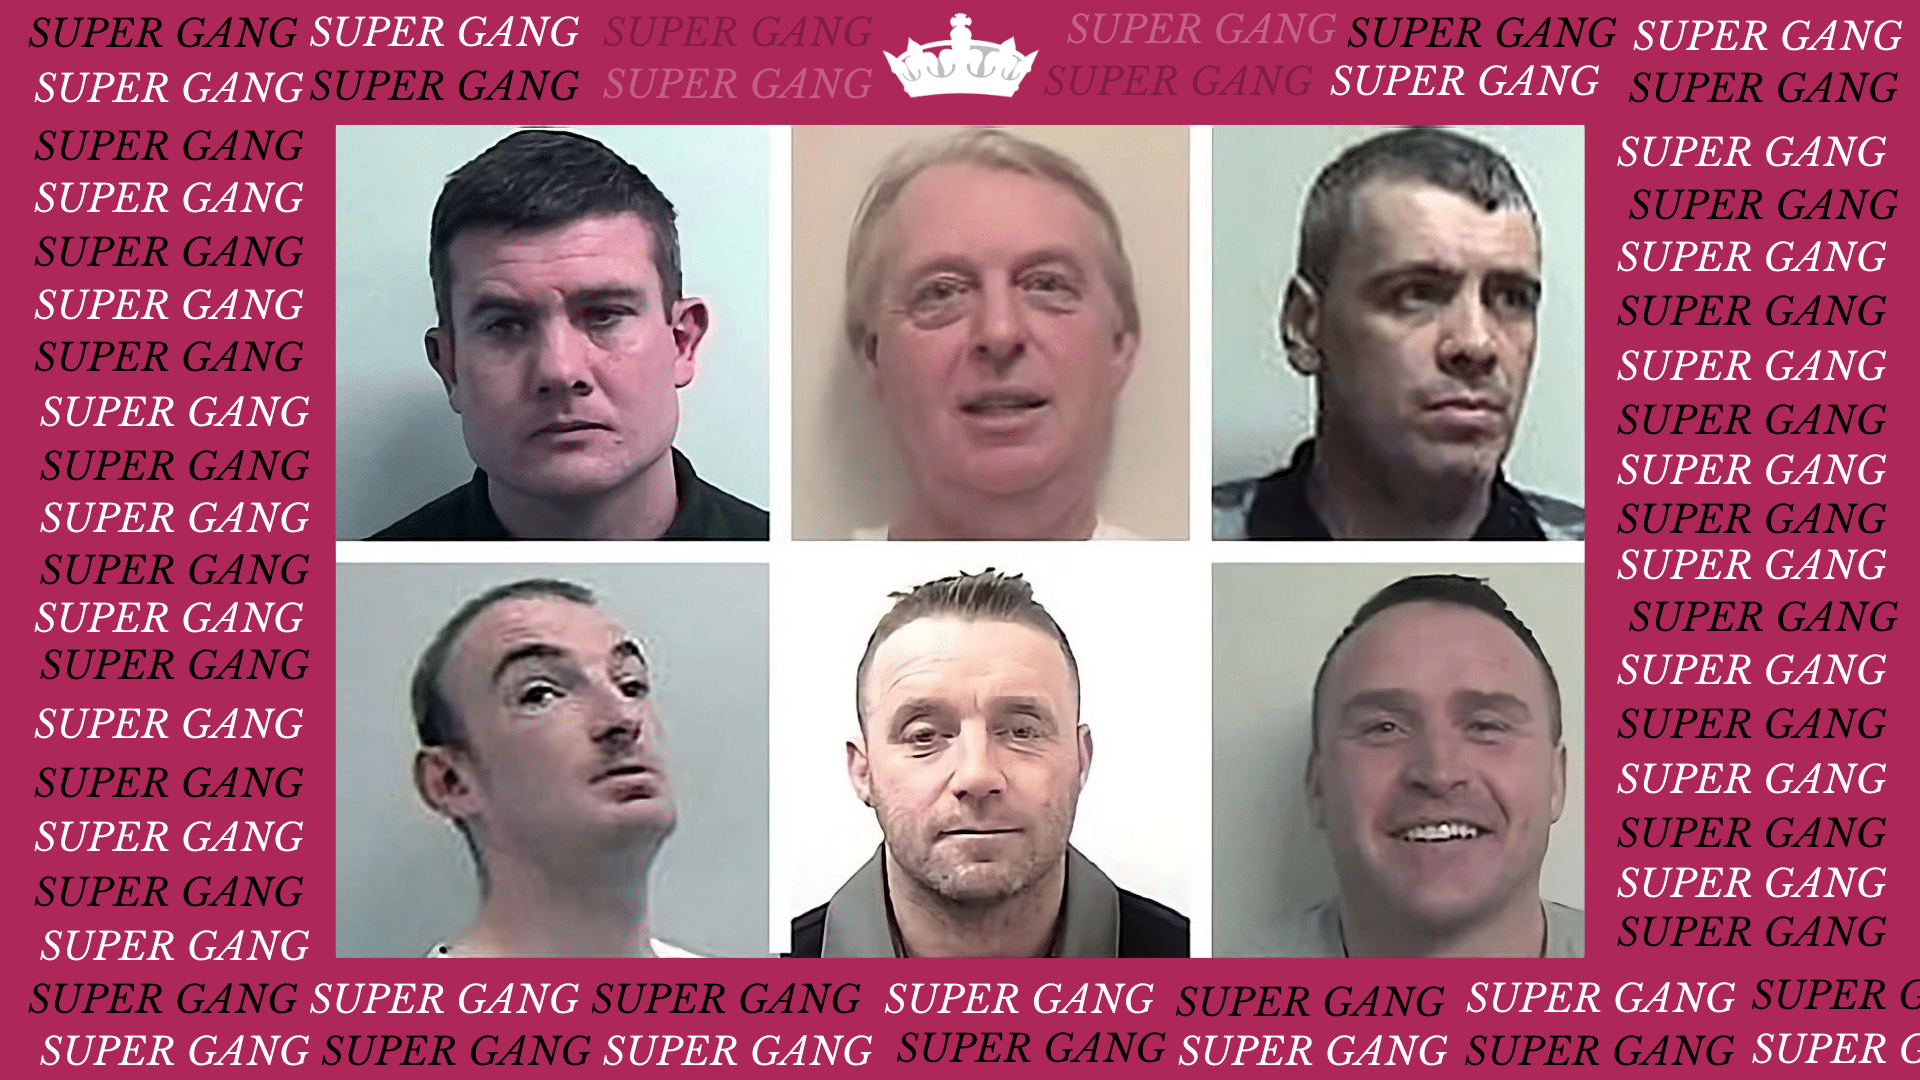 実話: 2万ポンドのスーパーギャングが30万ポンド以上の復讐で逮捕される